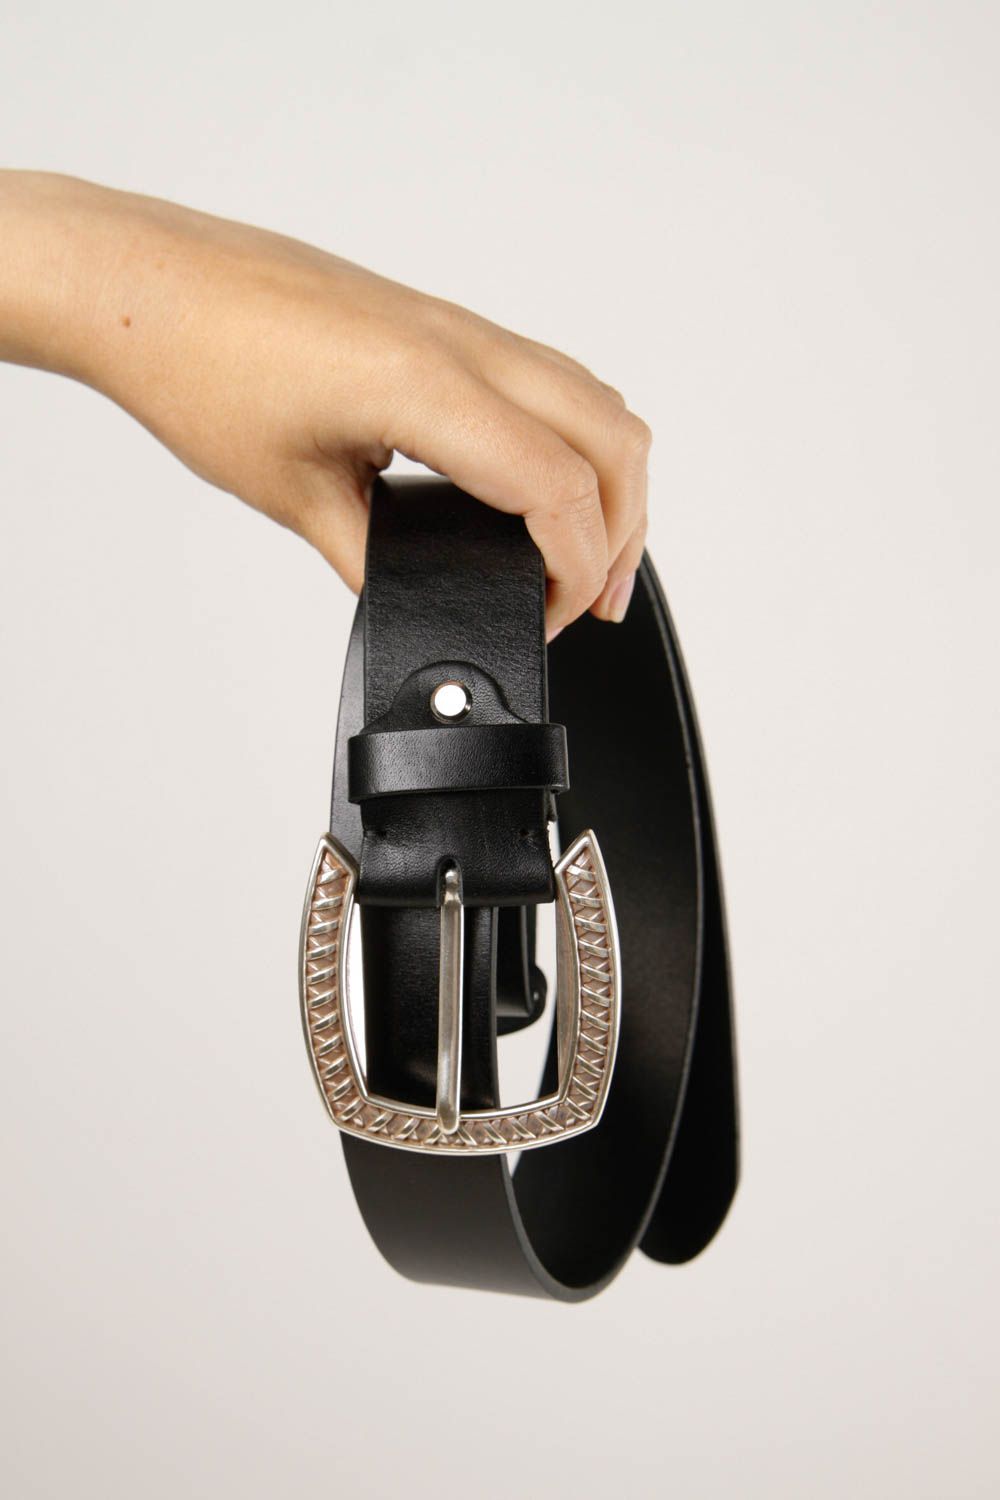 Handmade leather belt for men designer accessory black belt for men gift ideas photo 2